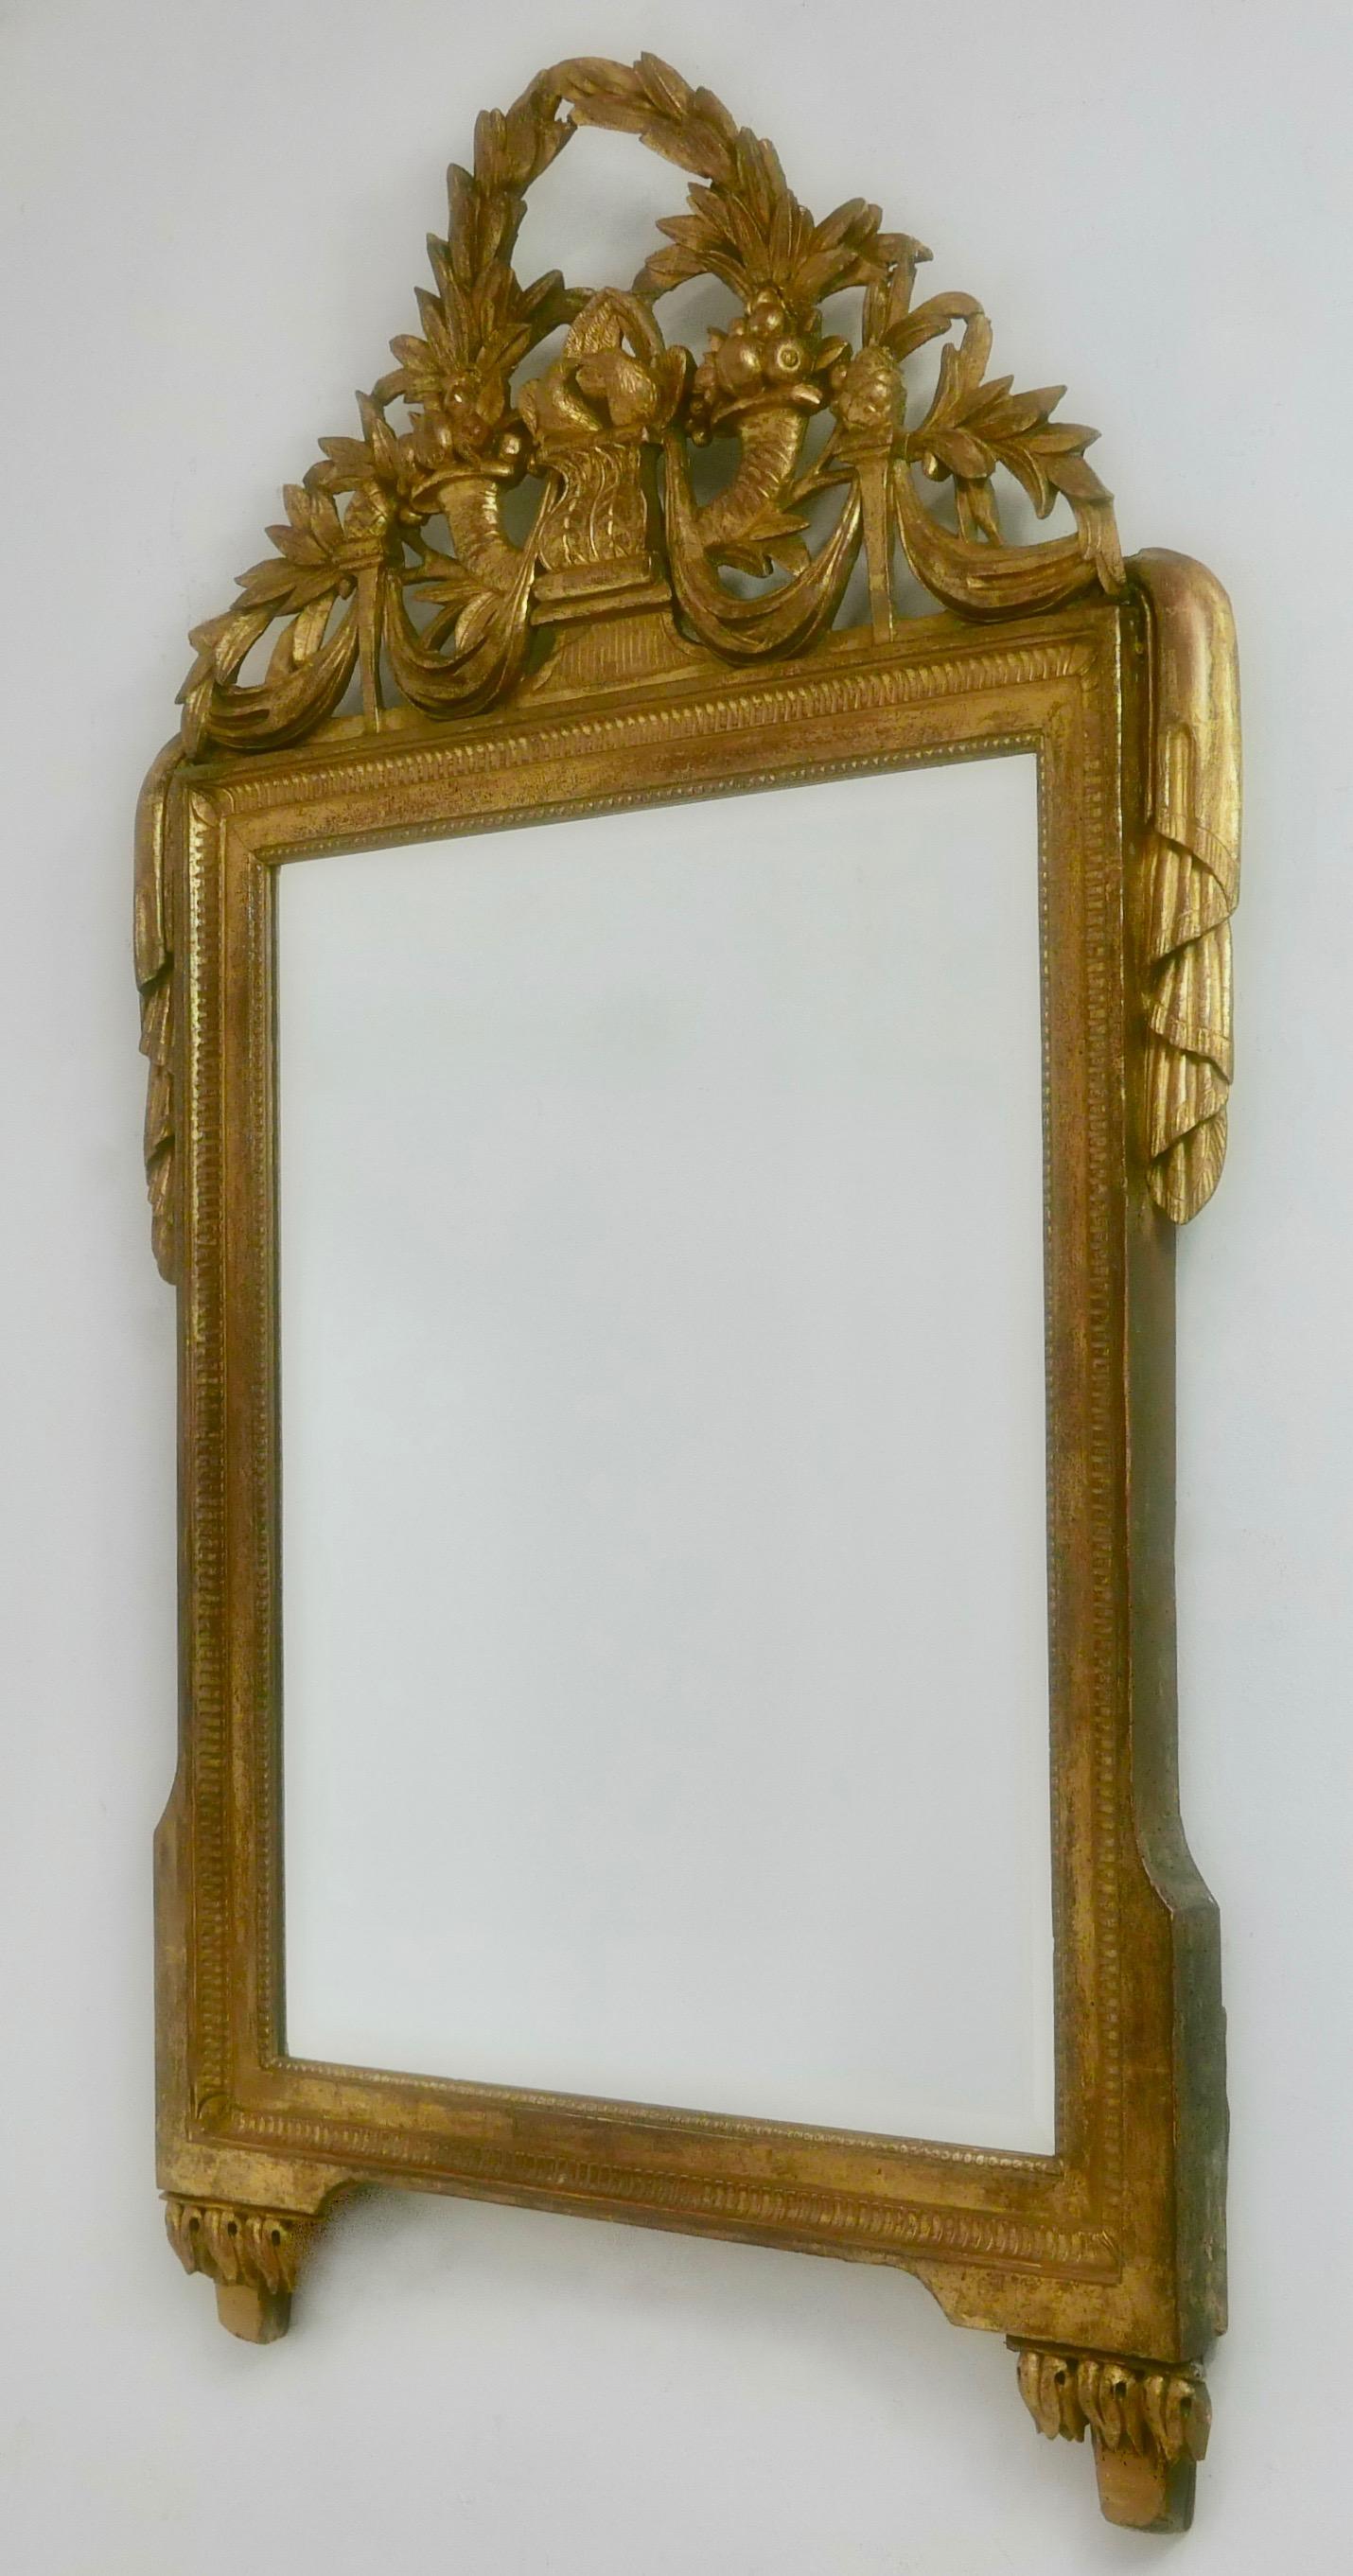 Un beau et bien proportionné miroir Louis XVI encadré de bois sculpté et doré, ayant sa dorure originale qui est magnifiquement vieillie. La couronne incurvée et percée, sculptée de façon complexe, comporte une couronne de laurier, des cornes